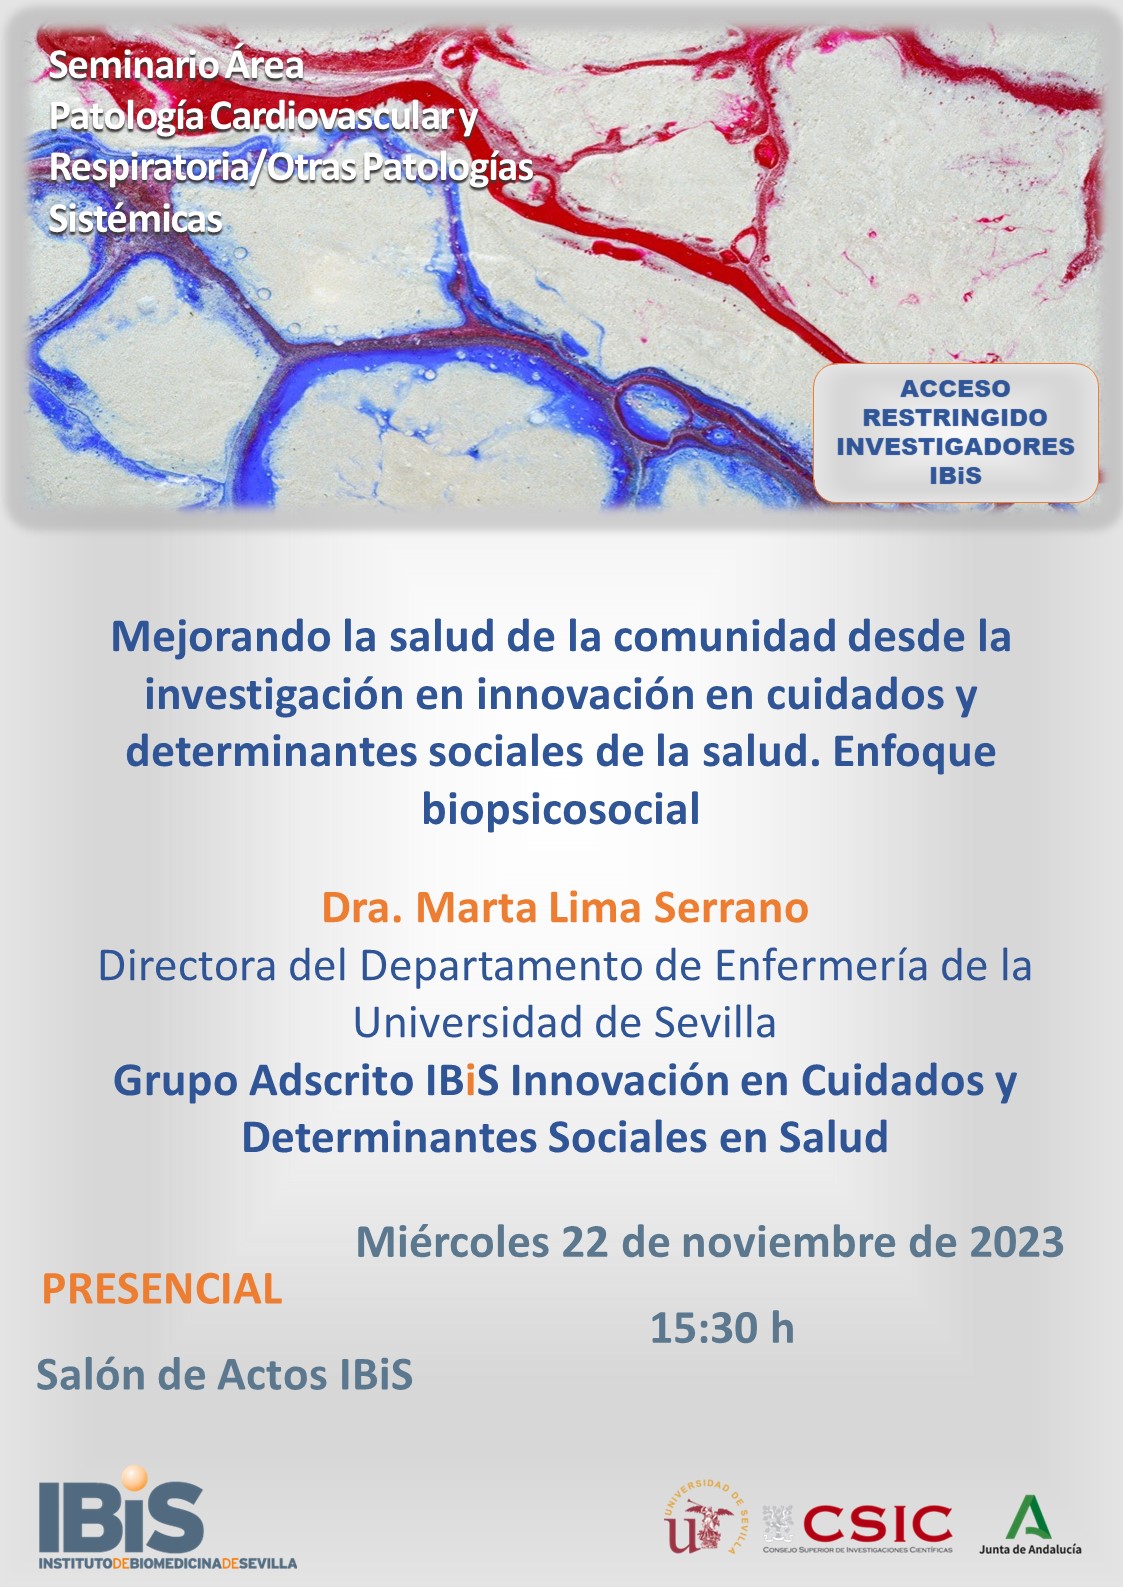 Poster: Mejorando la salud de la comunidad desde la investigación en innovación en cuidados y determinantes sociales de la salud. Enfoque biopsicosocial